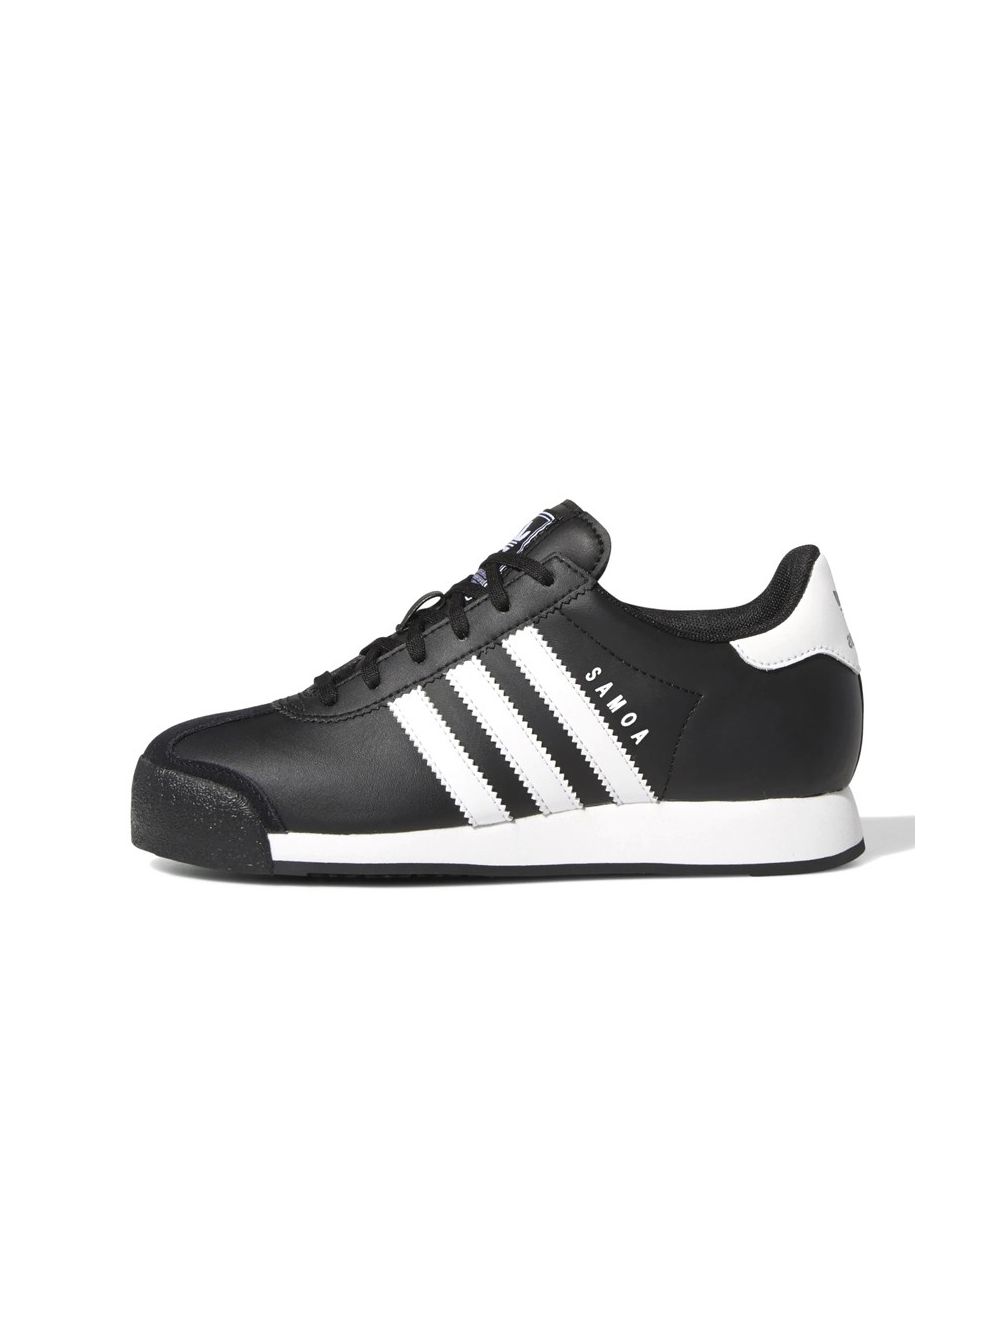 adidas samoa black and white